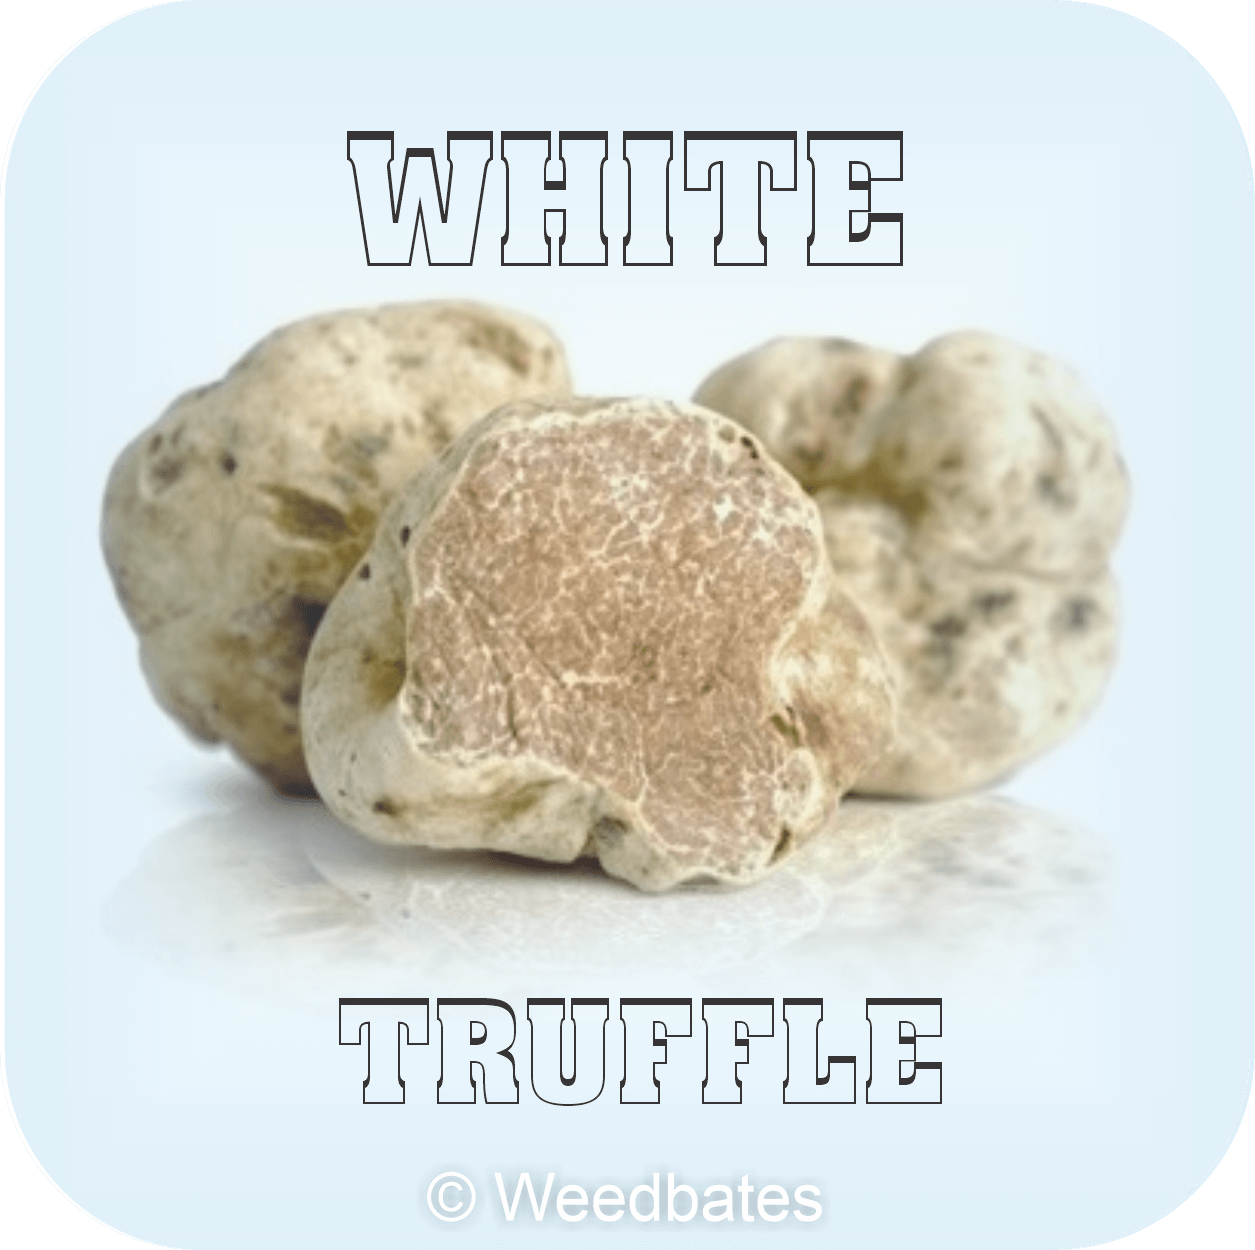 White Truffle strain